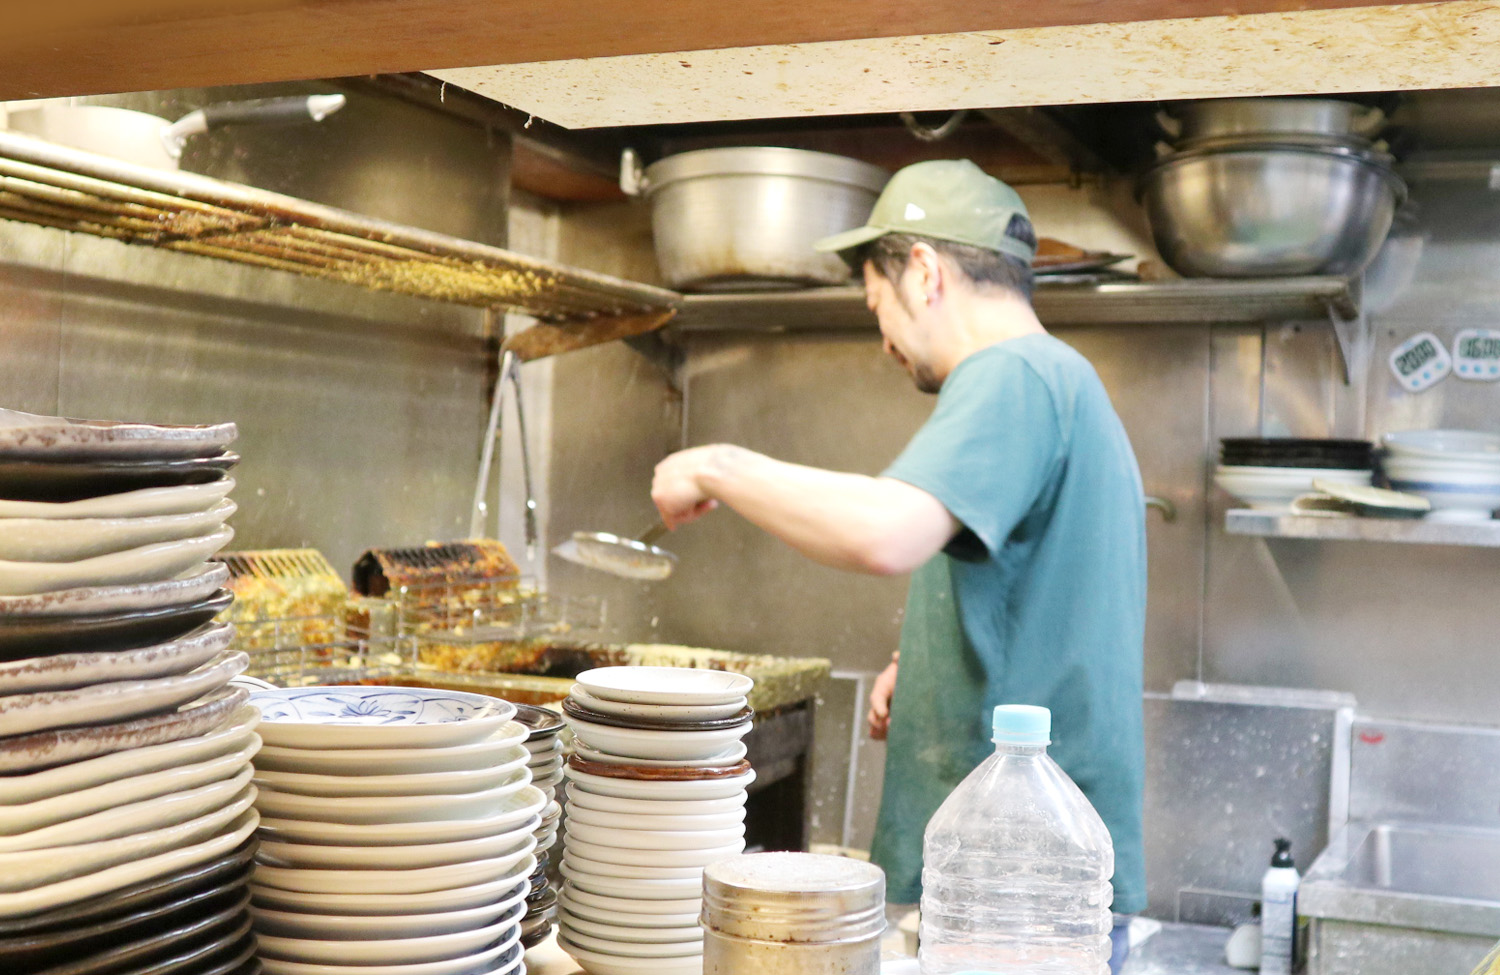 注文後、手際良く調理に入る早瀬さん。麺職人としての経験を感じさせる。